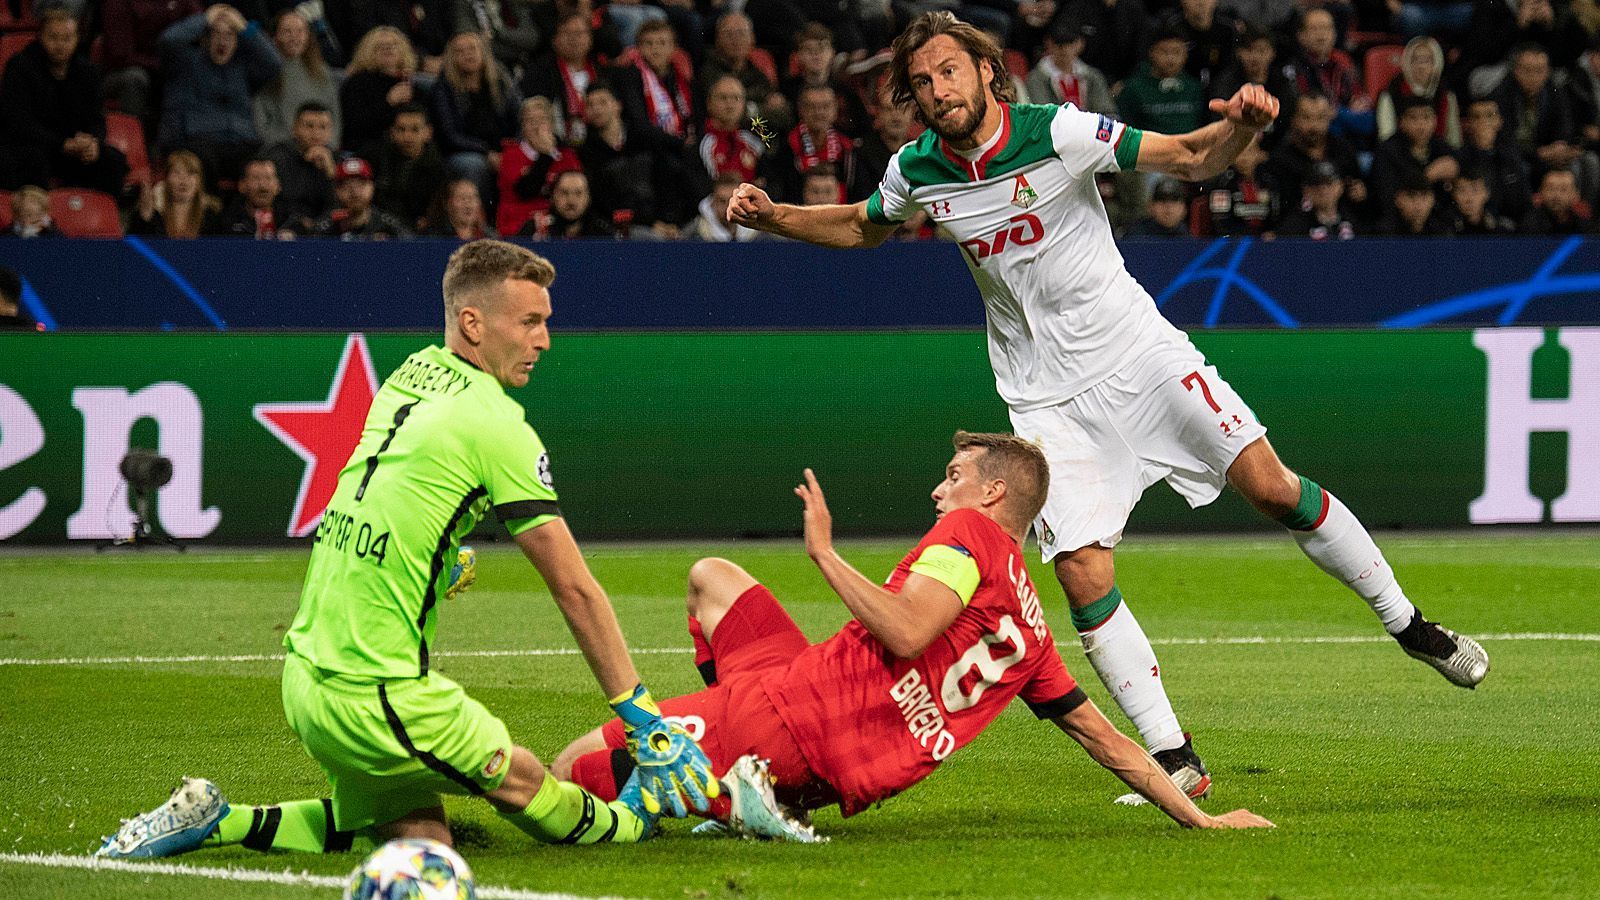 
                <strong>Gruppe D </strong><br>
                Lok Moskau – Bayer LeverkusenBayer Leverkusen (3) braucht in der Partie gegen Lok Moskau (3) unbedingt einen Sieg der 3:2 oder höher ausfällt oder mit mindestens zwei Toren Unterschied, um Platz drei und damit die Qualifikation für die Europa League zu sichern. Um nach dem letzten Spieltag vielleicht noch Platz 2 zu erreichen, braucht Bayer auf alle Fälle einen Sieg und muss auf einen Erfolg von Juventus gegen Atlético hoffen. Das gilt auch für Moskau.
              